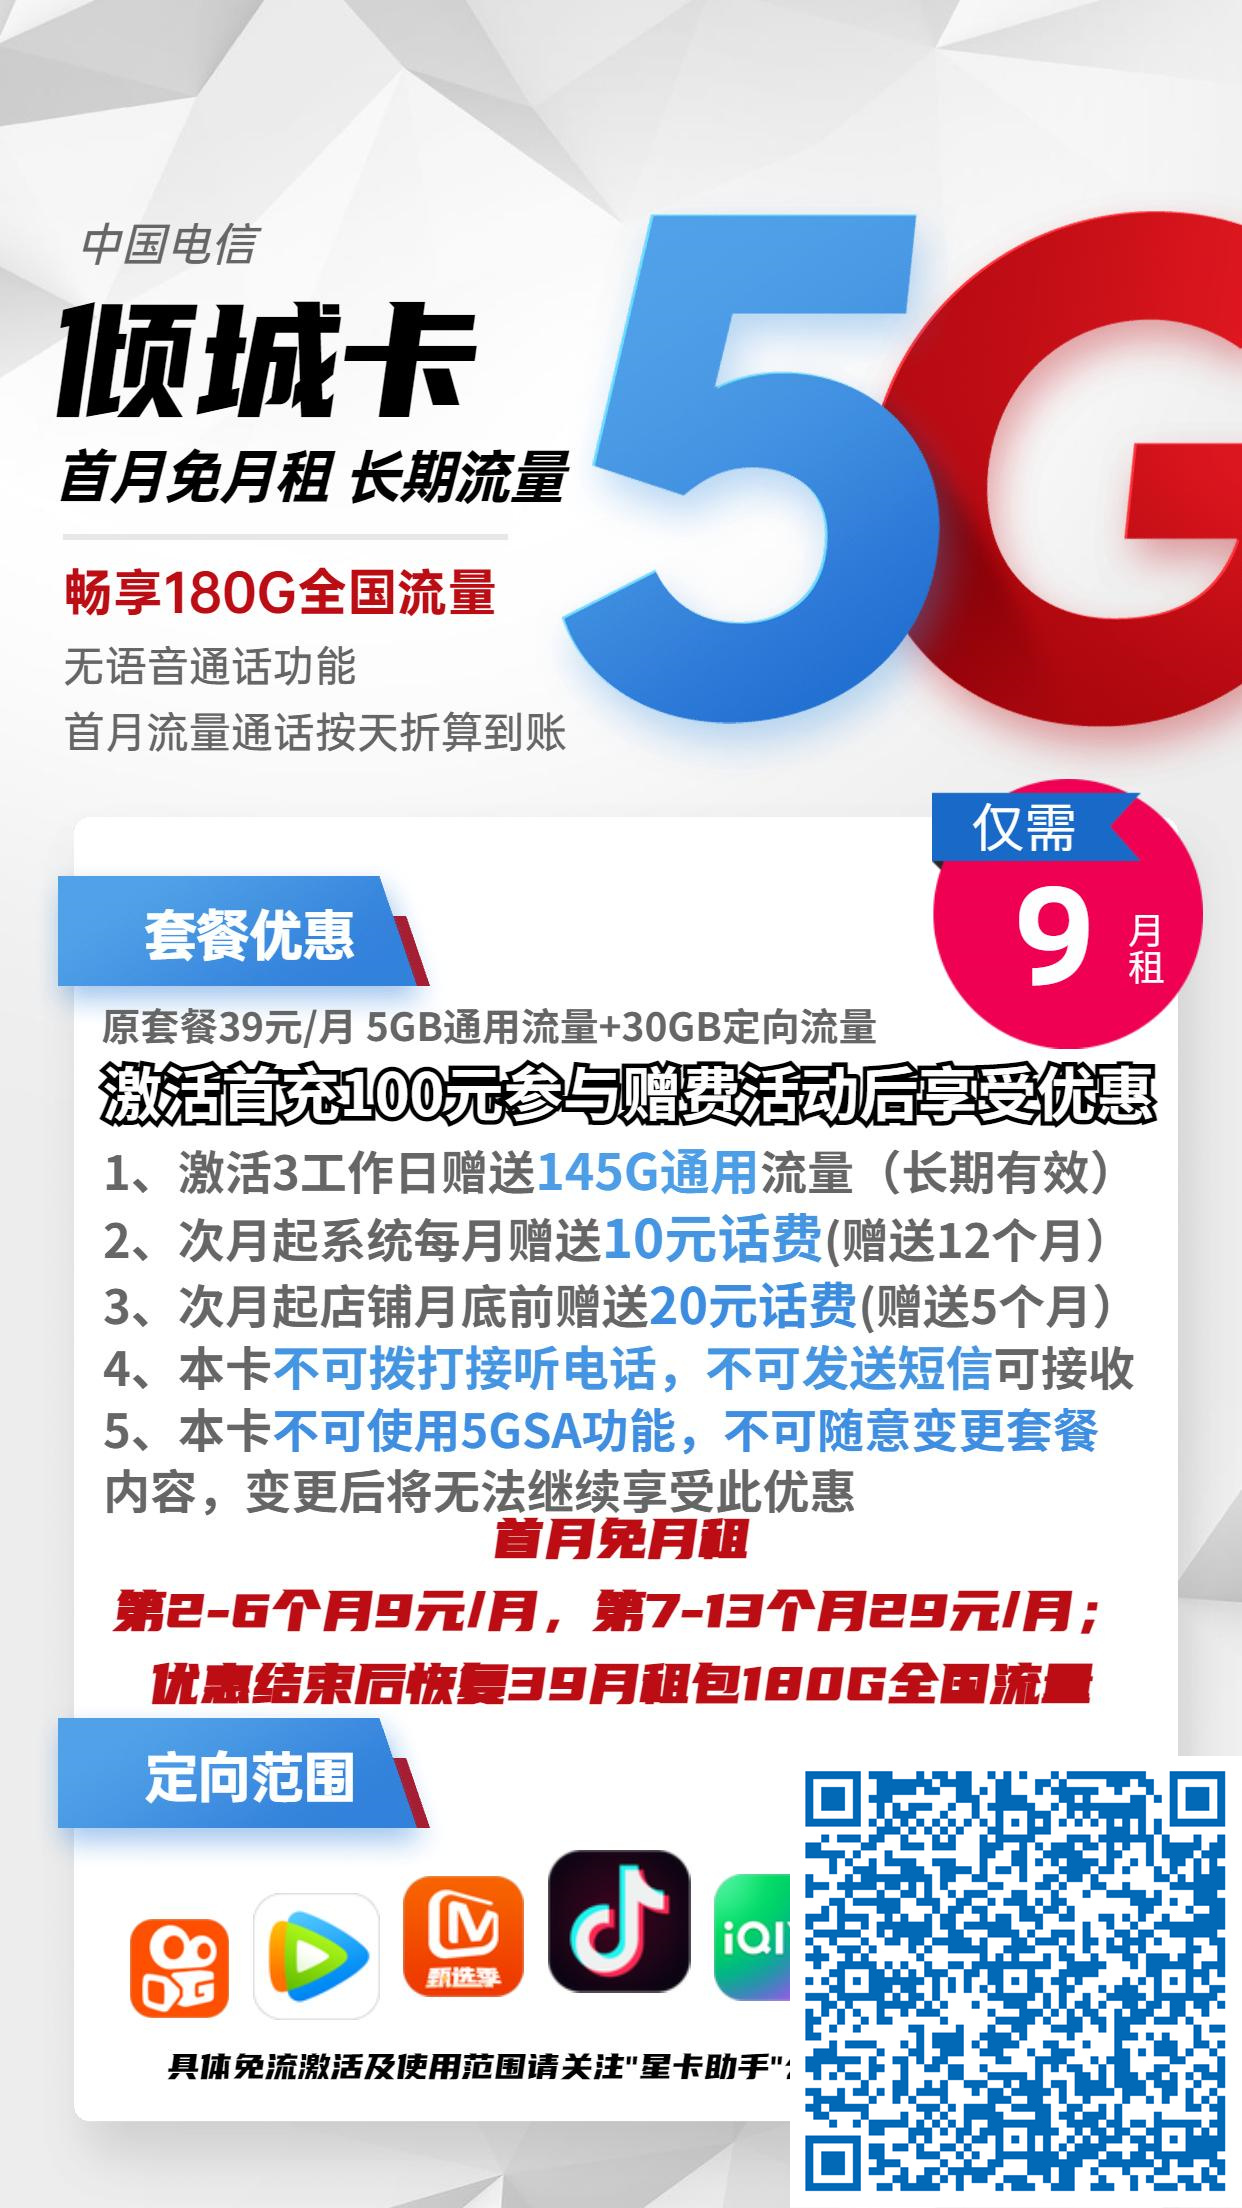 北京星卡:电信倾城卡9元月包150G通用流量+30G定向流量+无语音功能